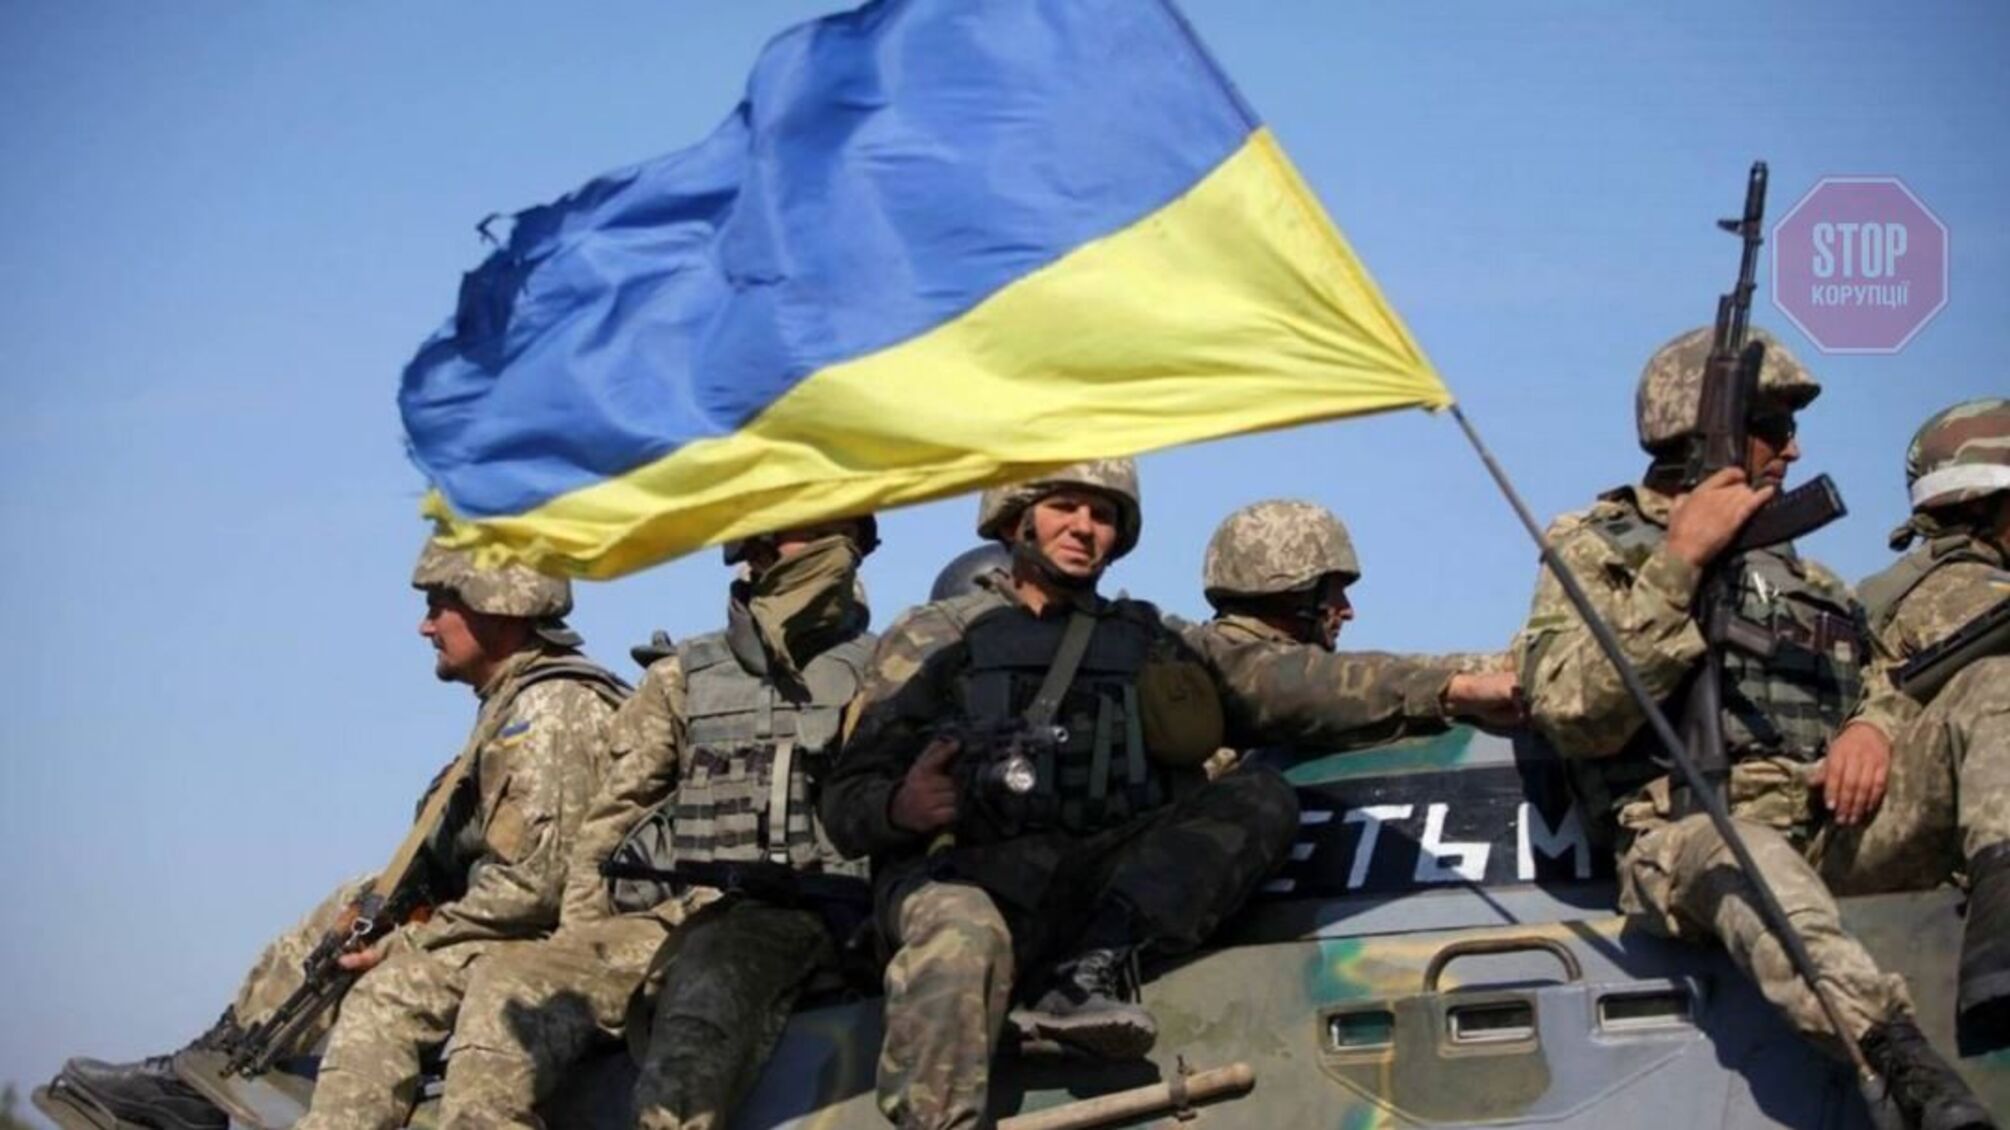 Киевляне массово возвращаются домой, власти призывают не спешить